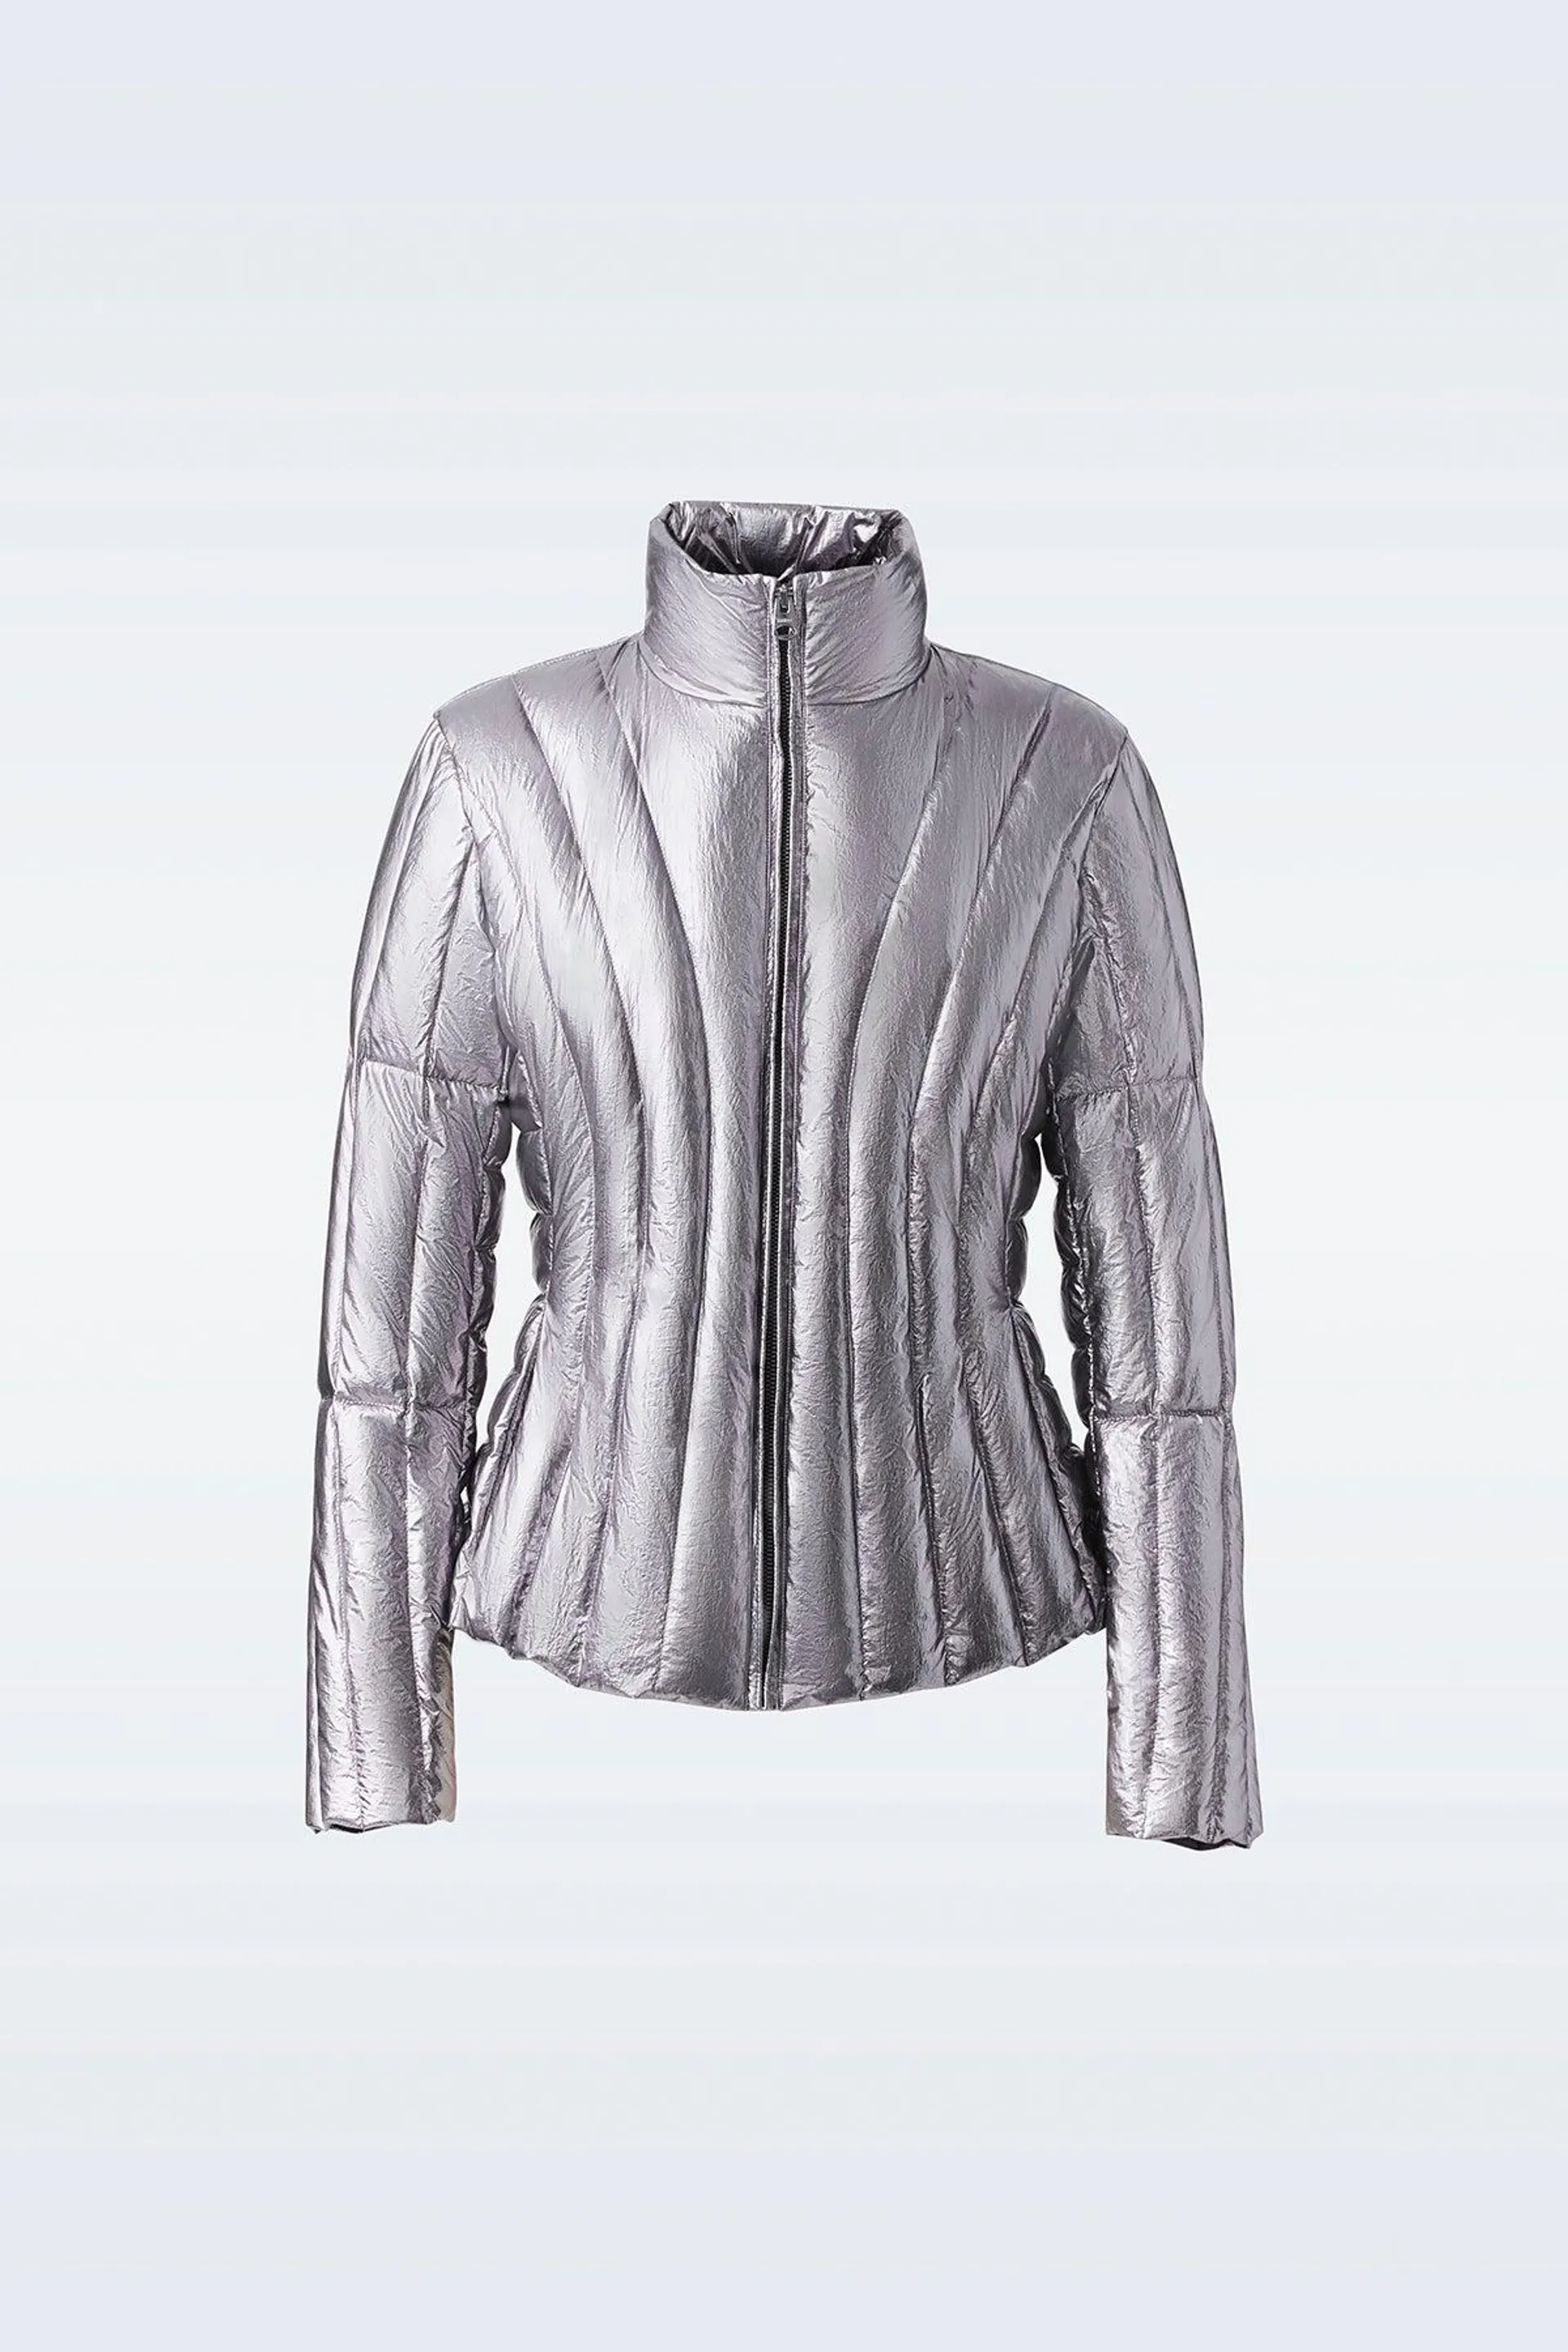 LANY-M Metallic Laminate Light Down jacket